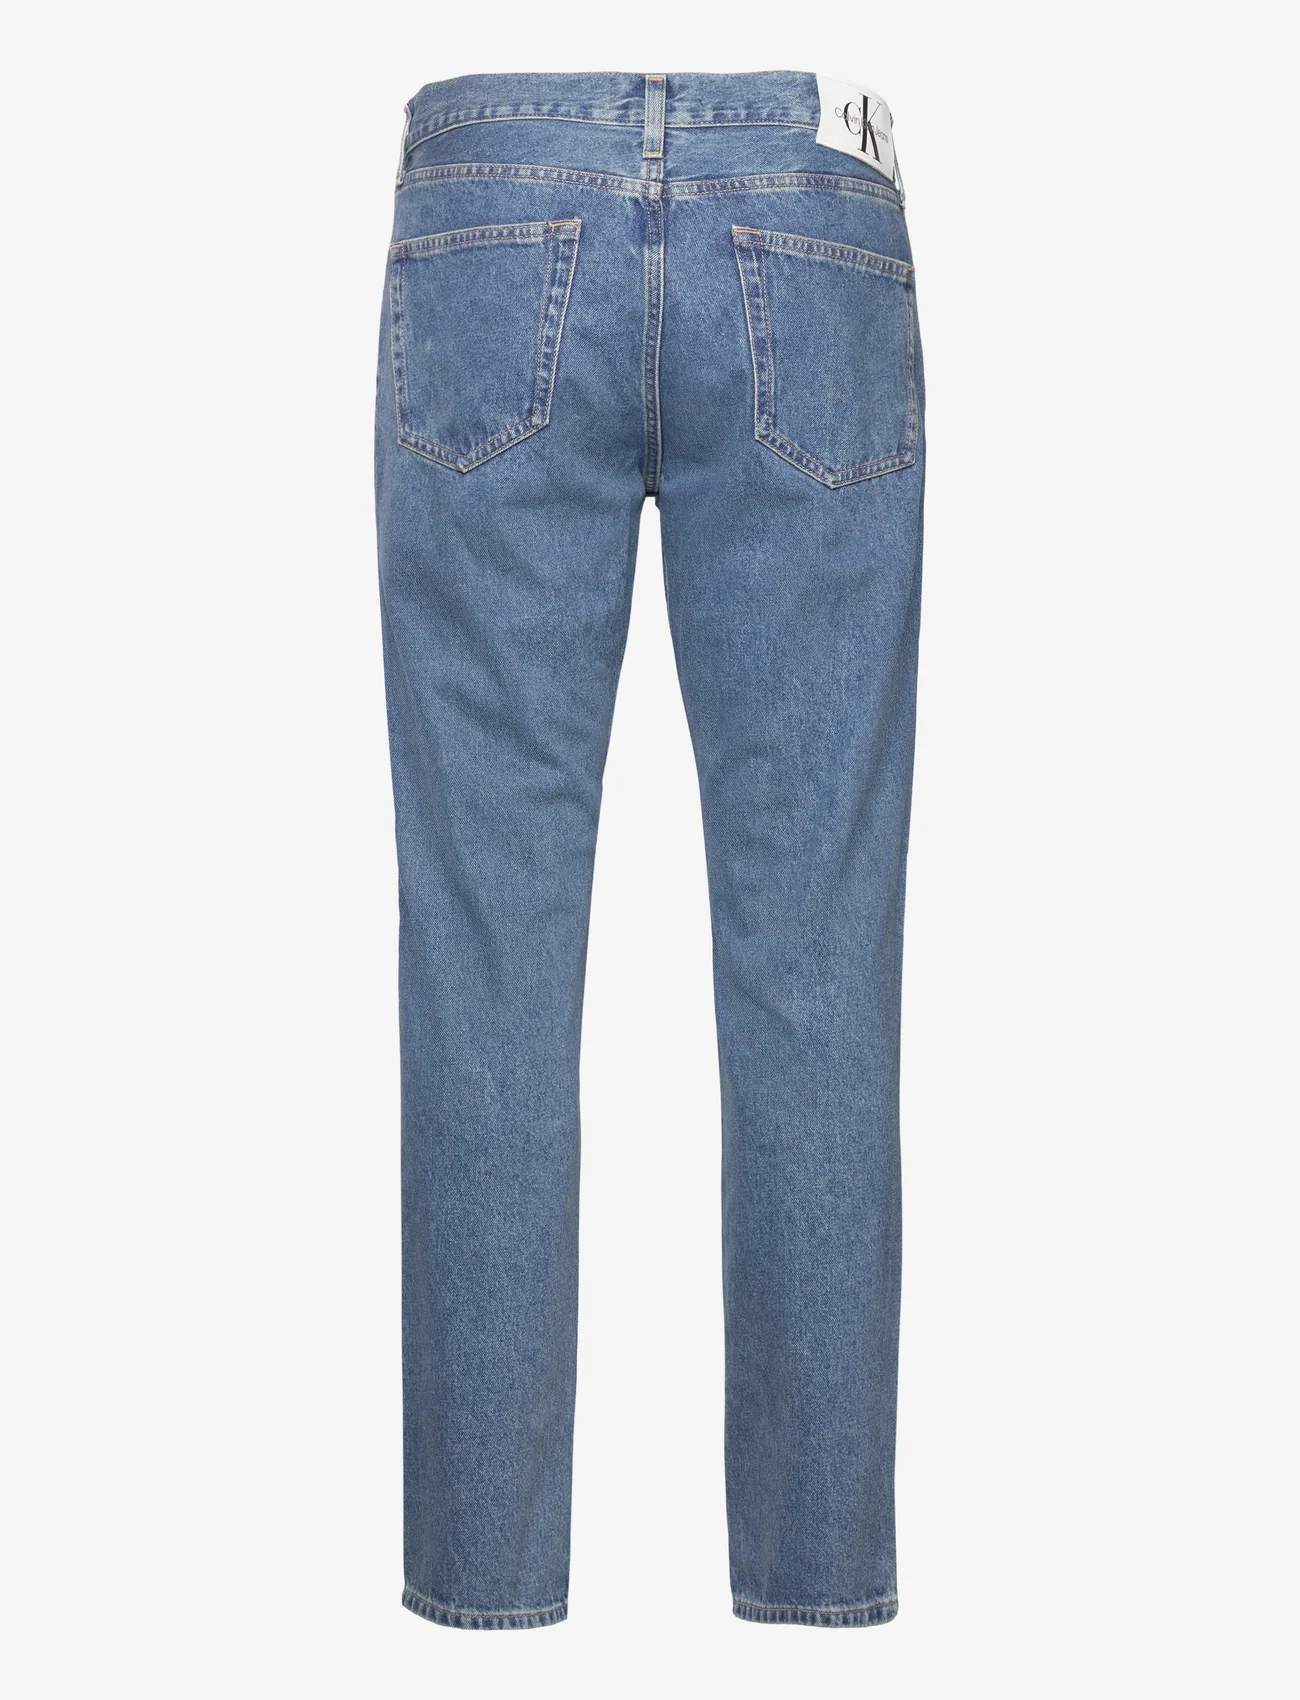 Calvin Klein Jeans - AUTHENTIC STRAIGHT - Įprasto kirpimo džinsai - denim medium - 1